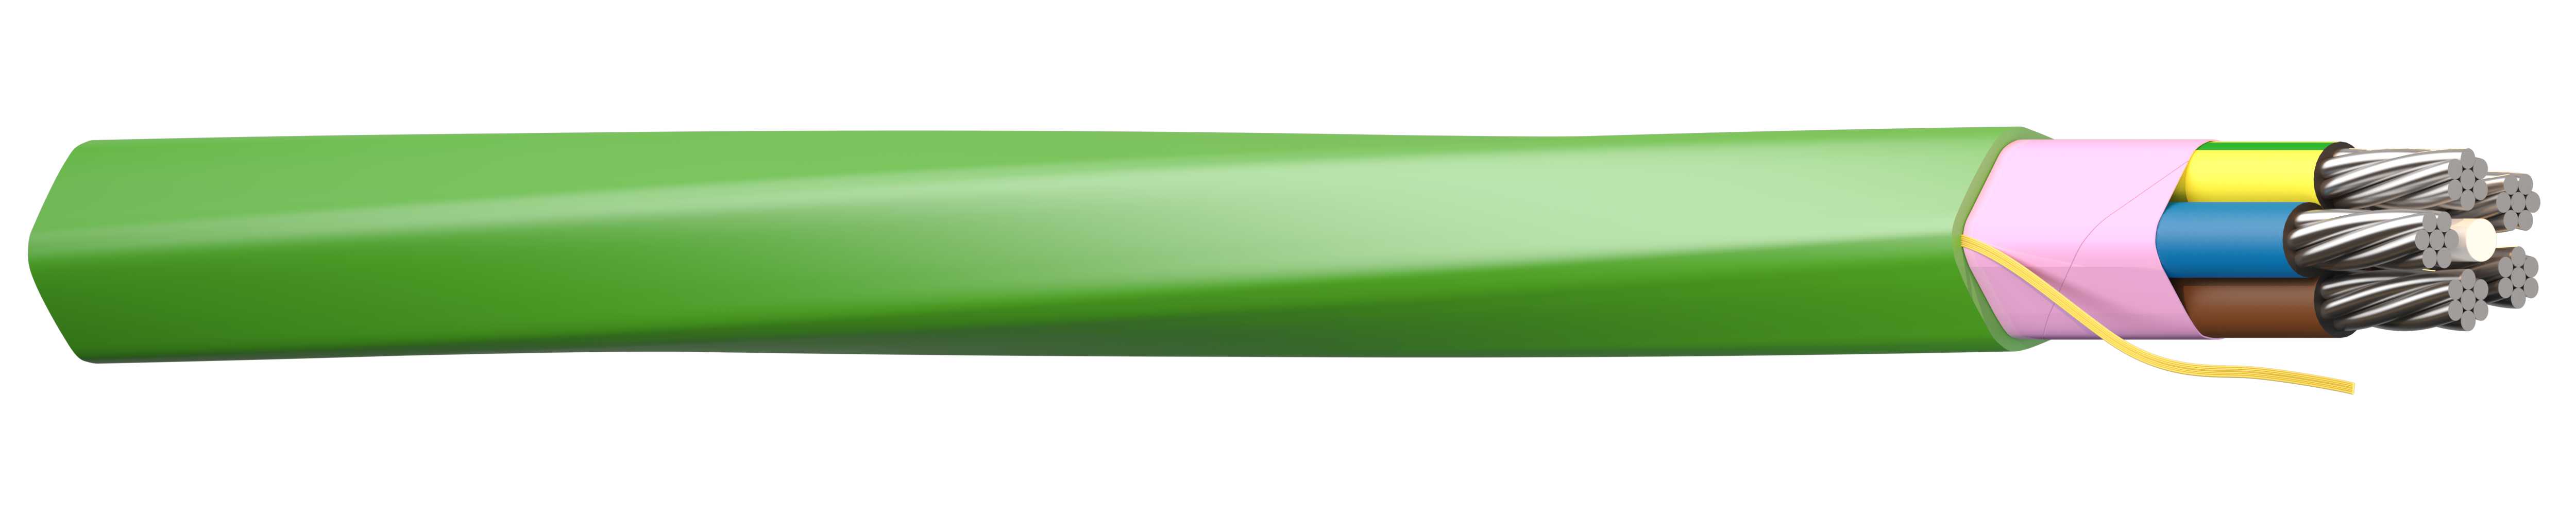 Draka - PROLIGHT VEGLYS KABEL 5G25mm2 Grønn